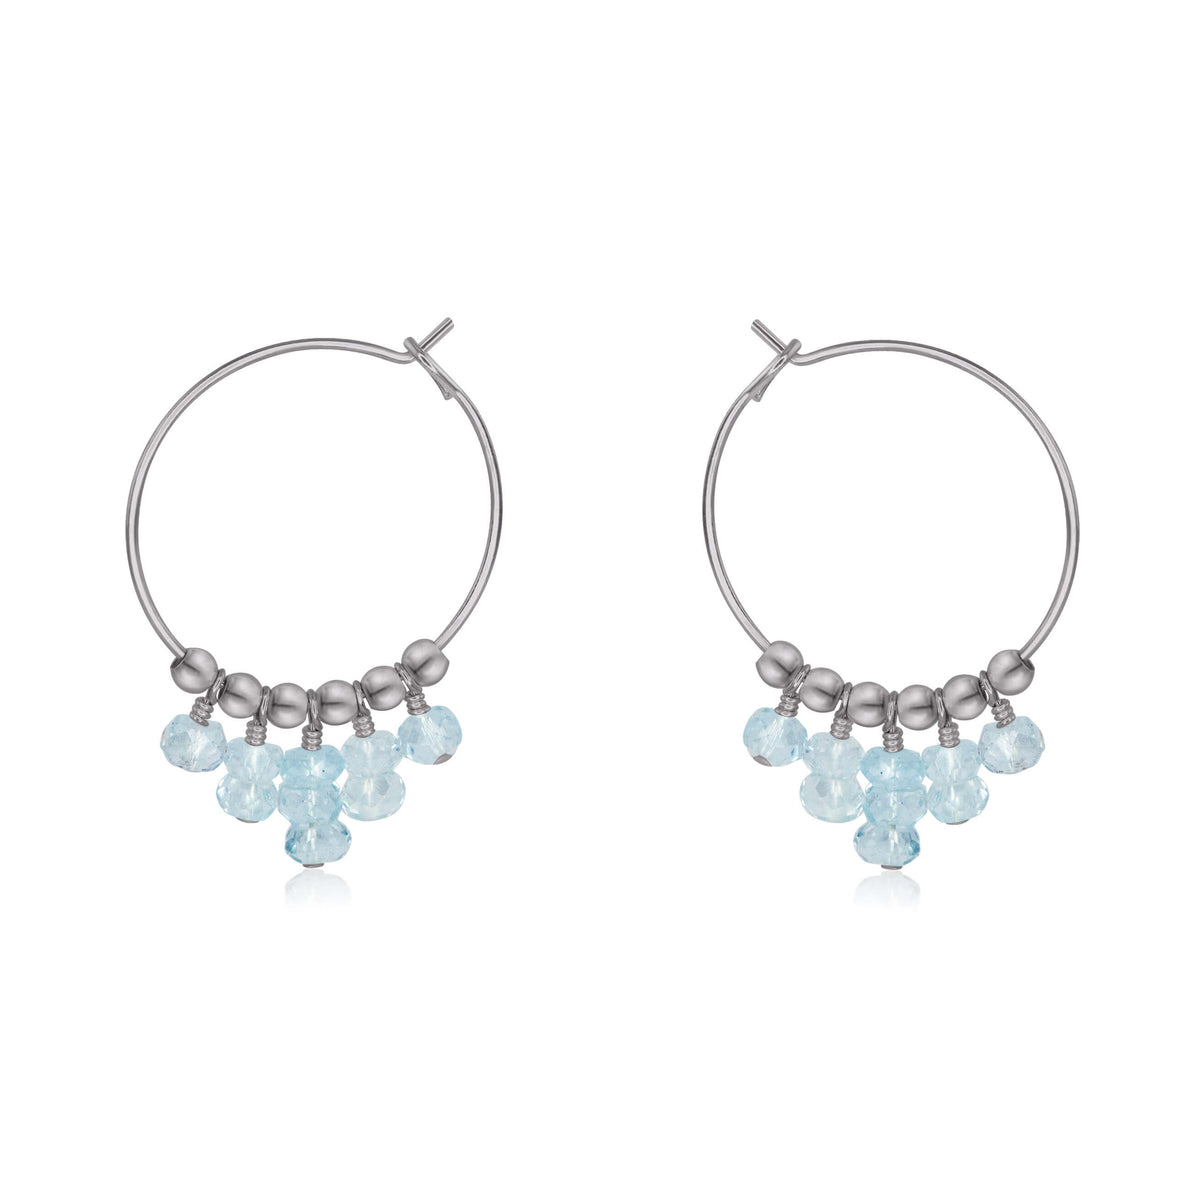 Hoop Earrings - Aquamarine - Stainless Steel - Luna Tide Handmade Jewellery